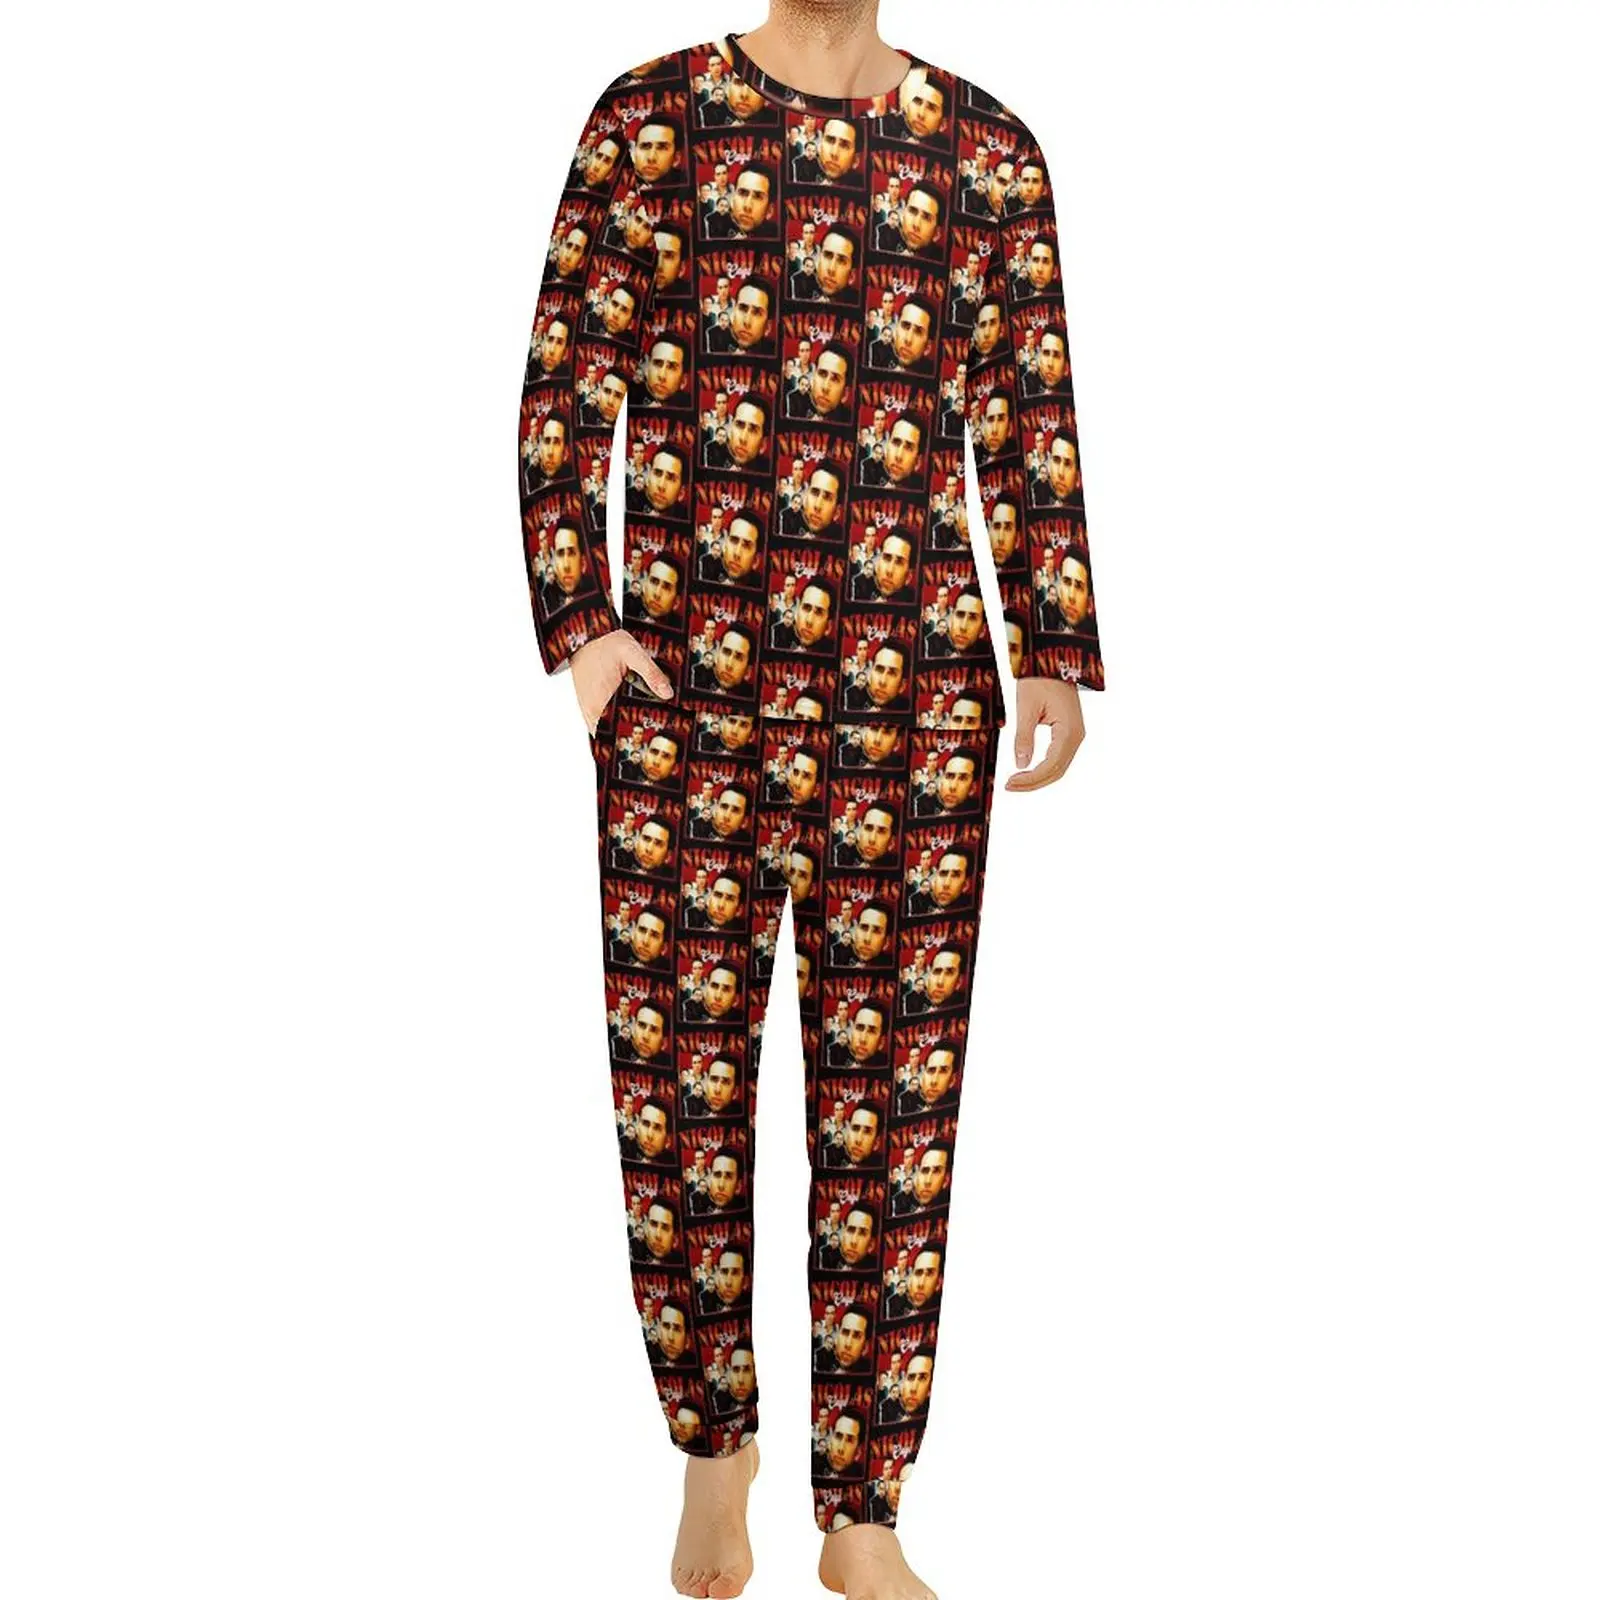 Nicolas Cage Pajamas Nick Cage Men Long Sleeve Soft Pajamas Set 2 Piece Night Winter Custom Sleepwear Gift Idea